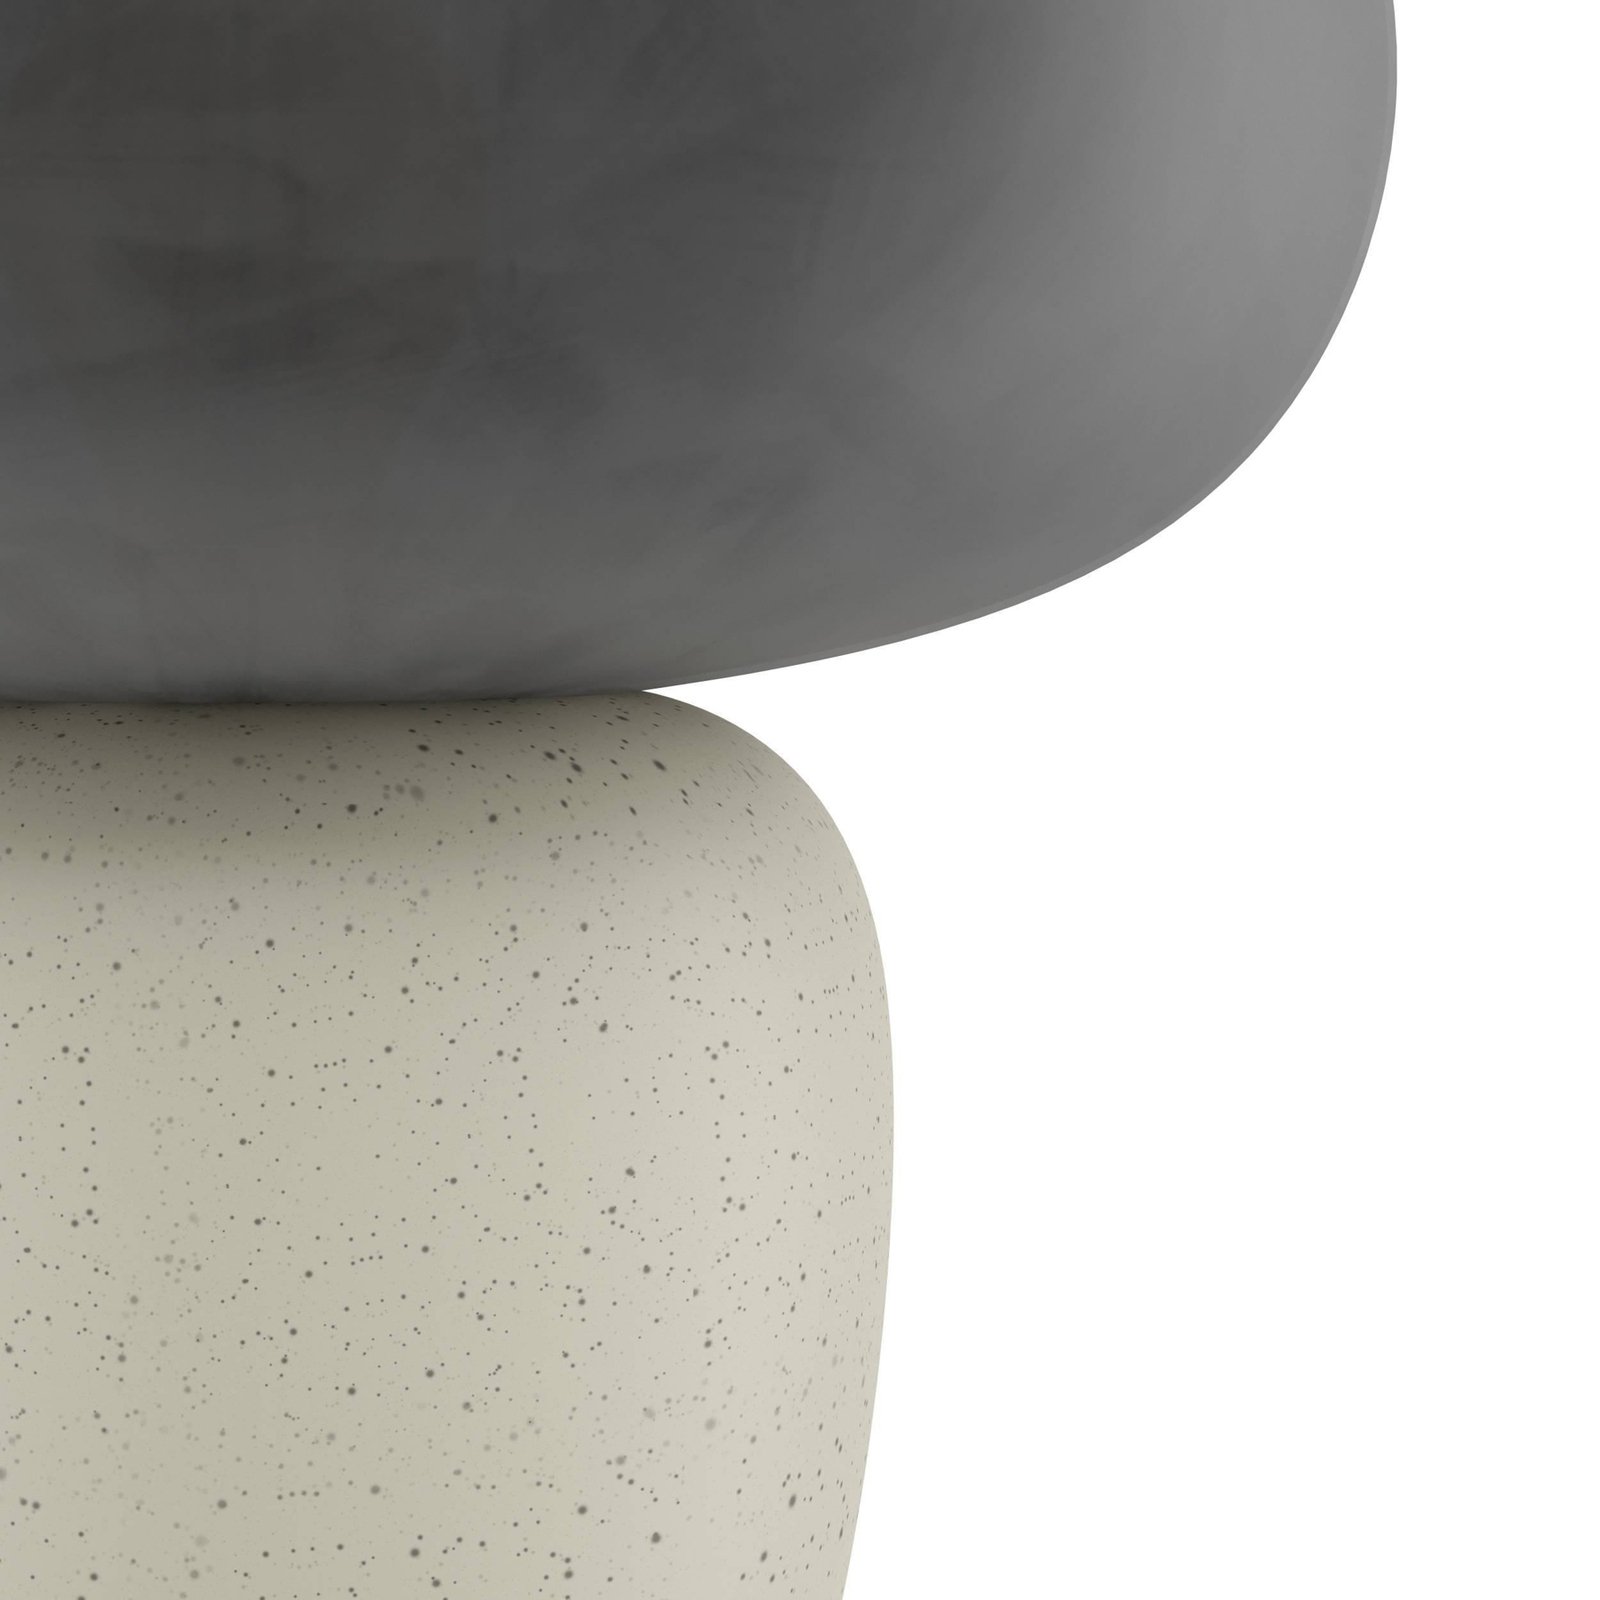 Lampa stołowa Cahuama, czarny/biały, ceramika